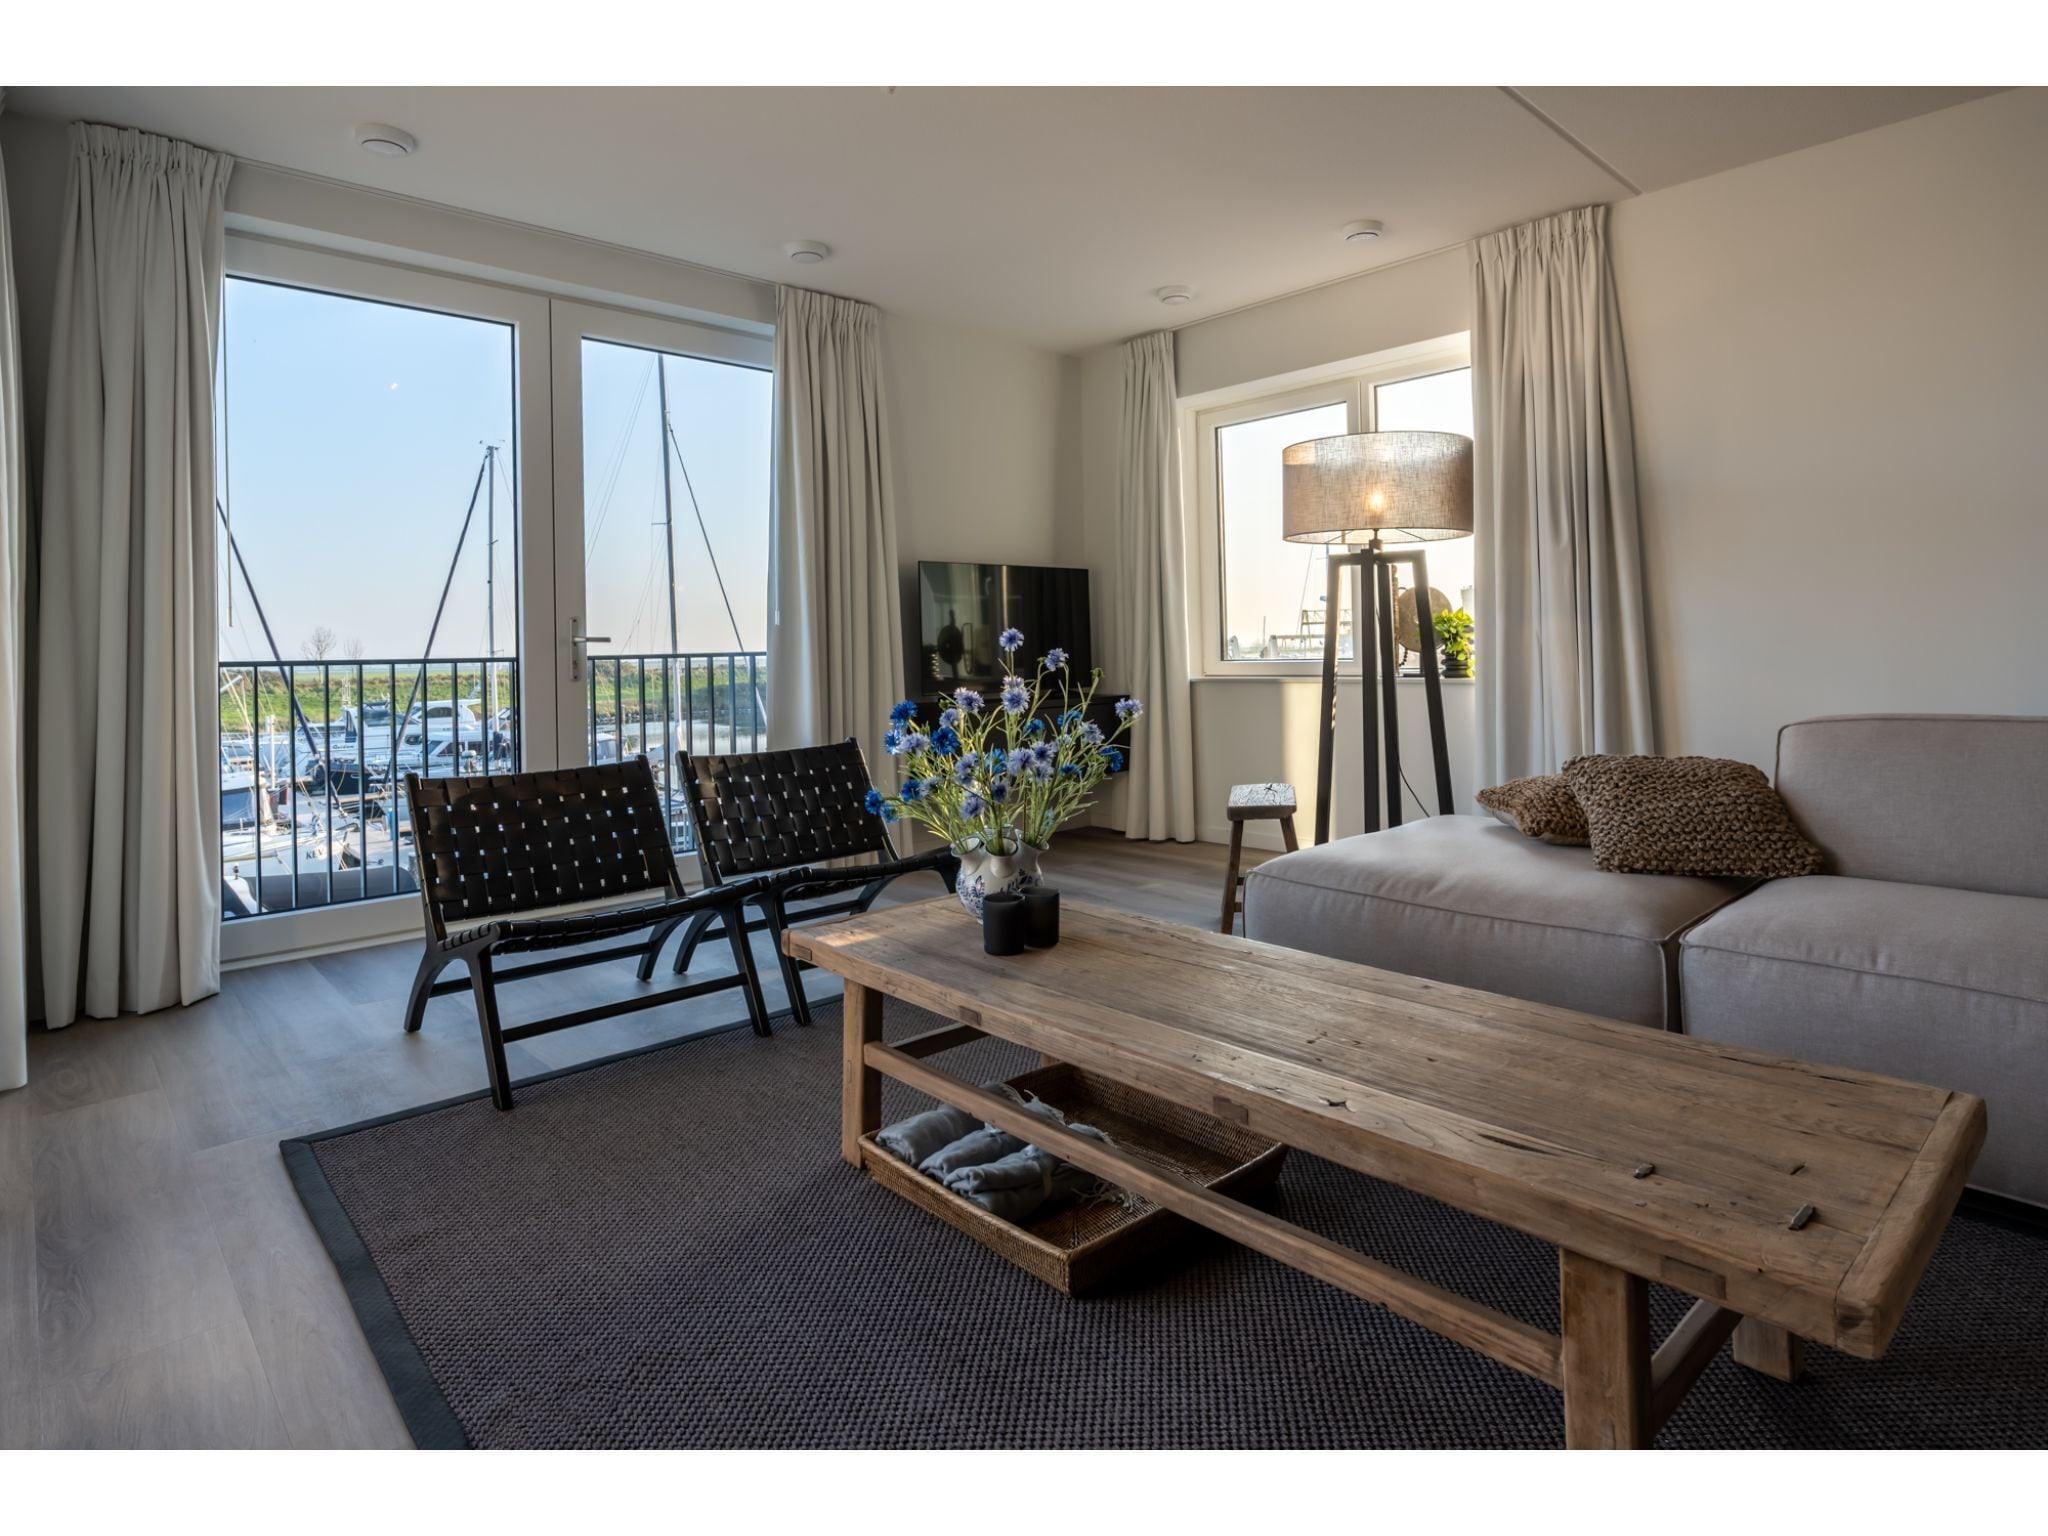 Appartement met ruim balkon en prachtig uitzicht op de levendige jachthaven